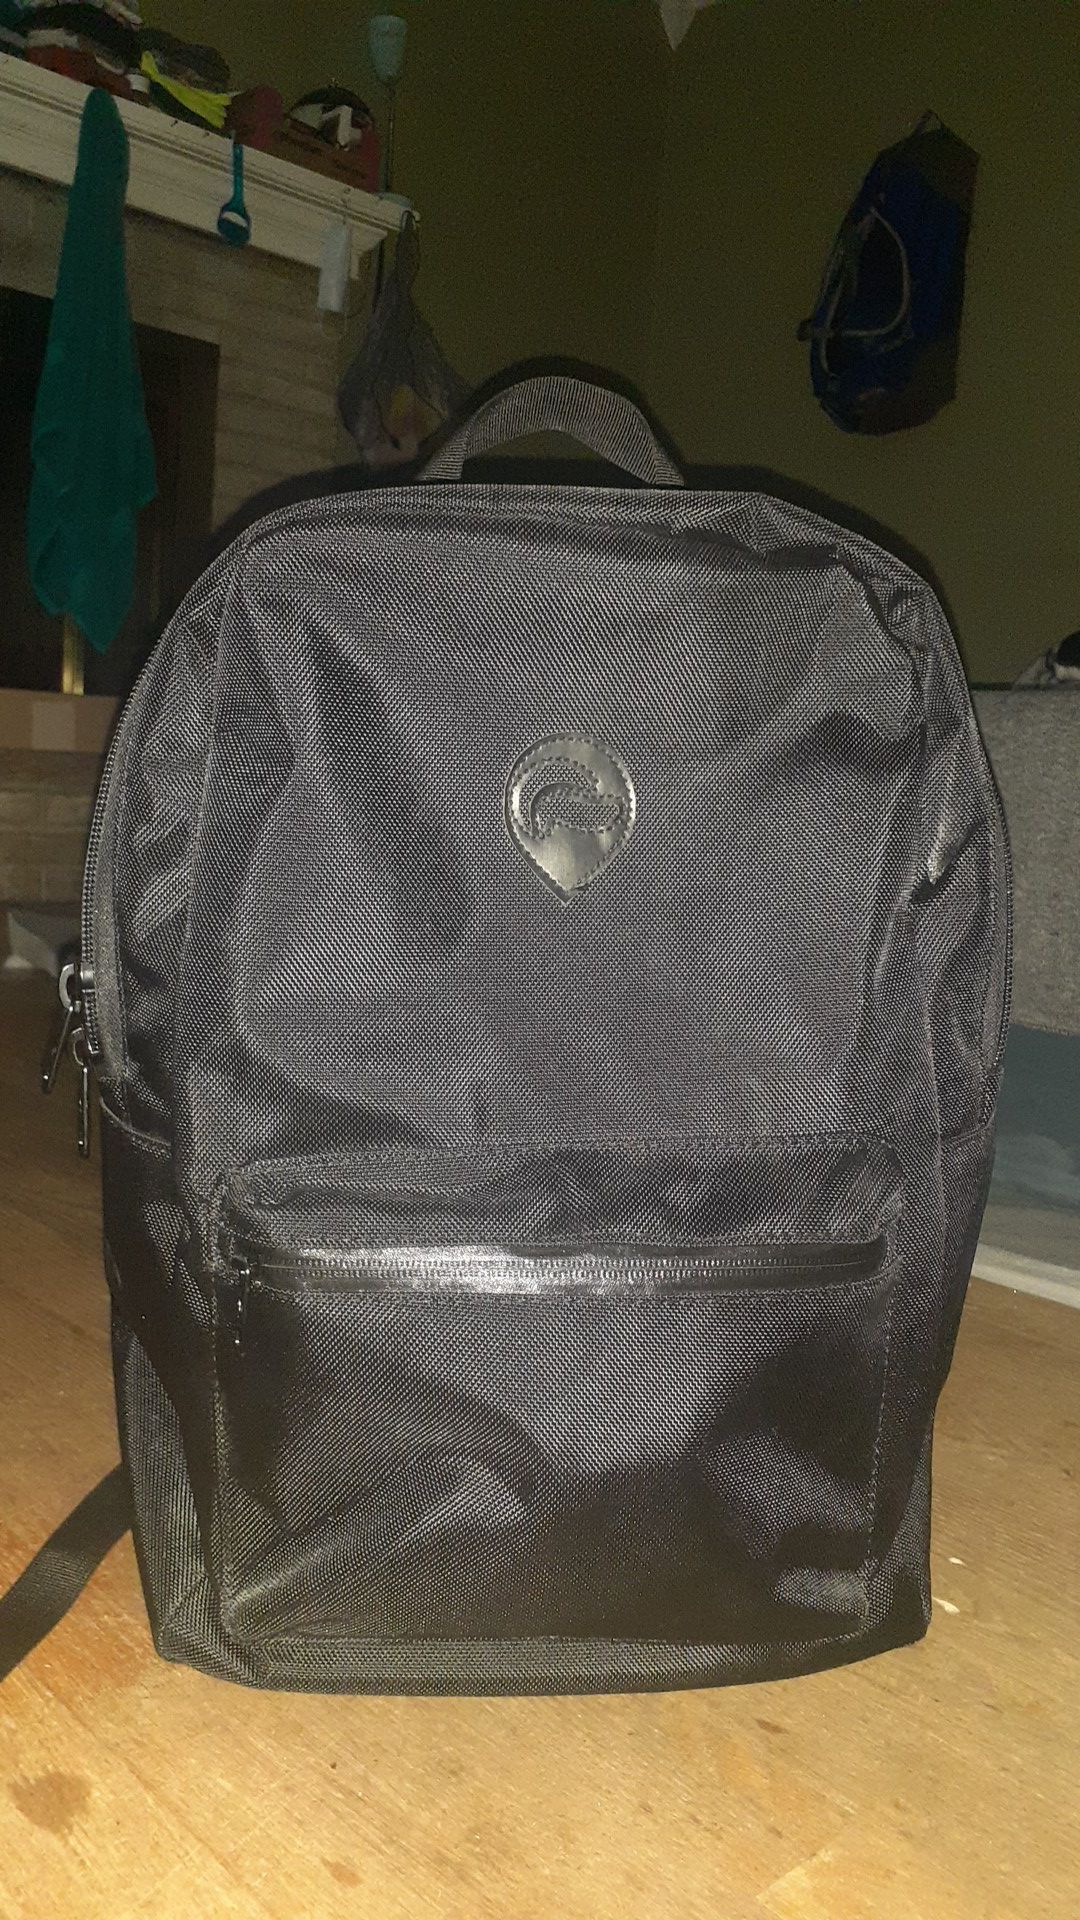 Skunk backpack smell proof